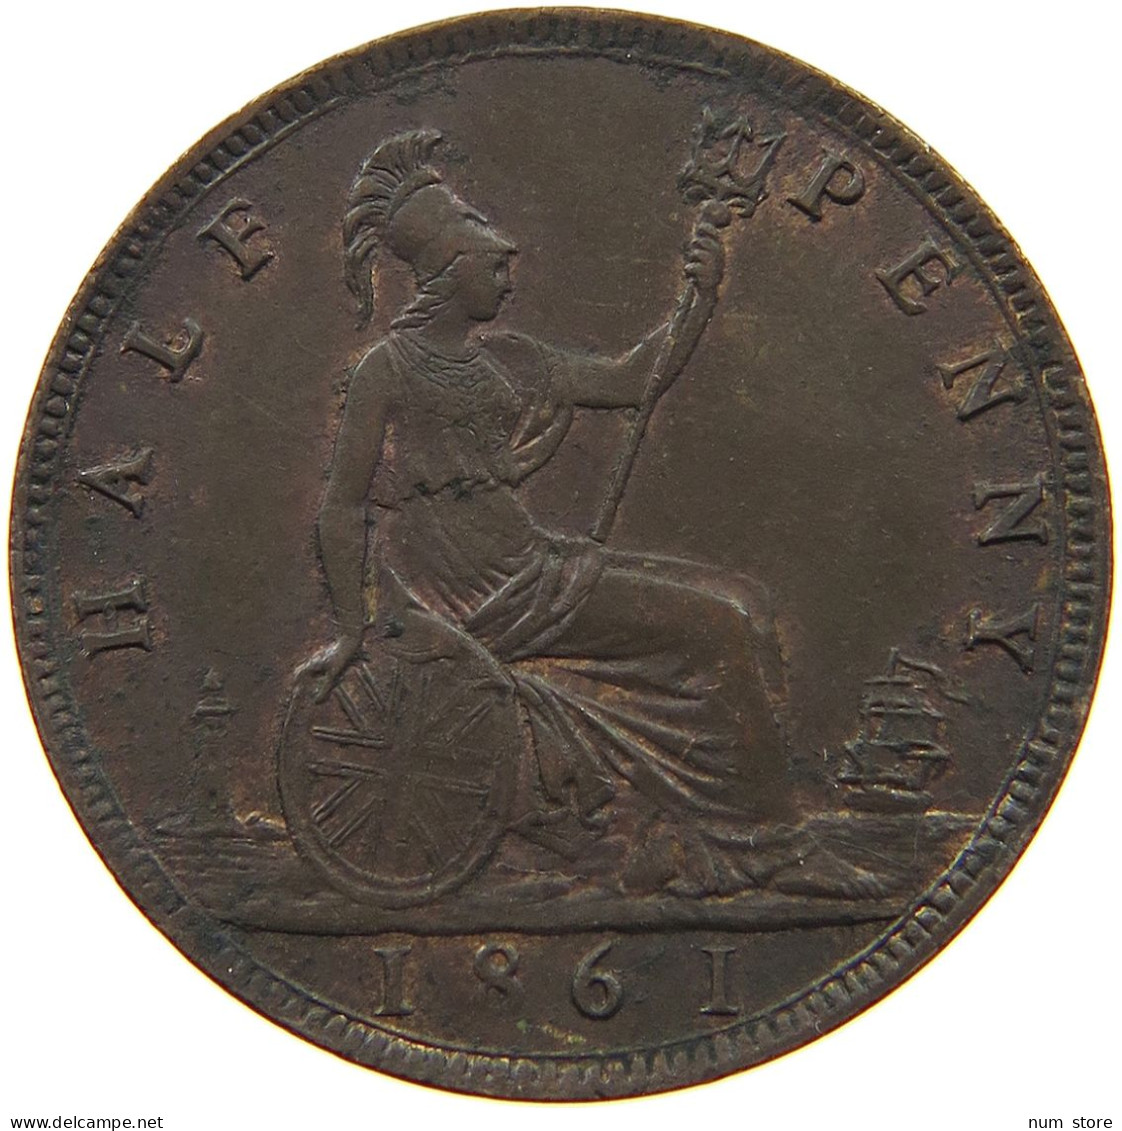 GREAT BRITAIN HALF PENNY 1861 Victoria 1837-1901 #t077 0387 - C. 1/2 Penny